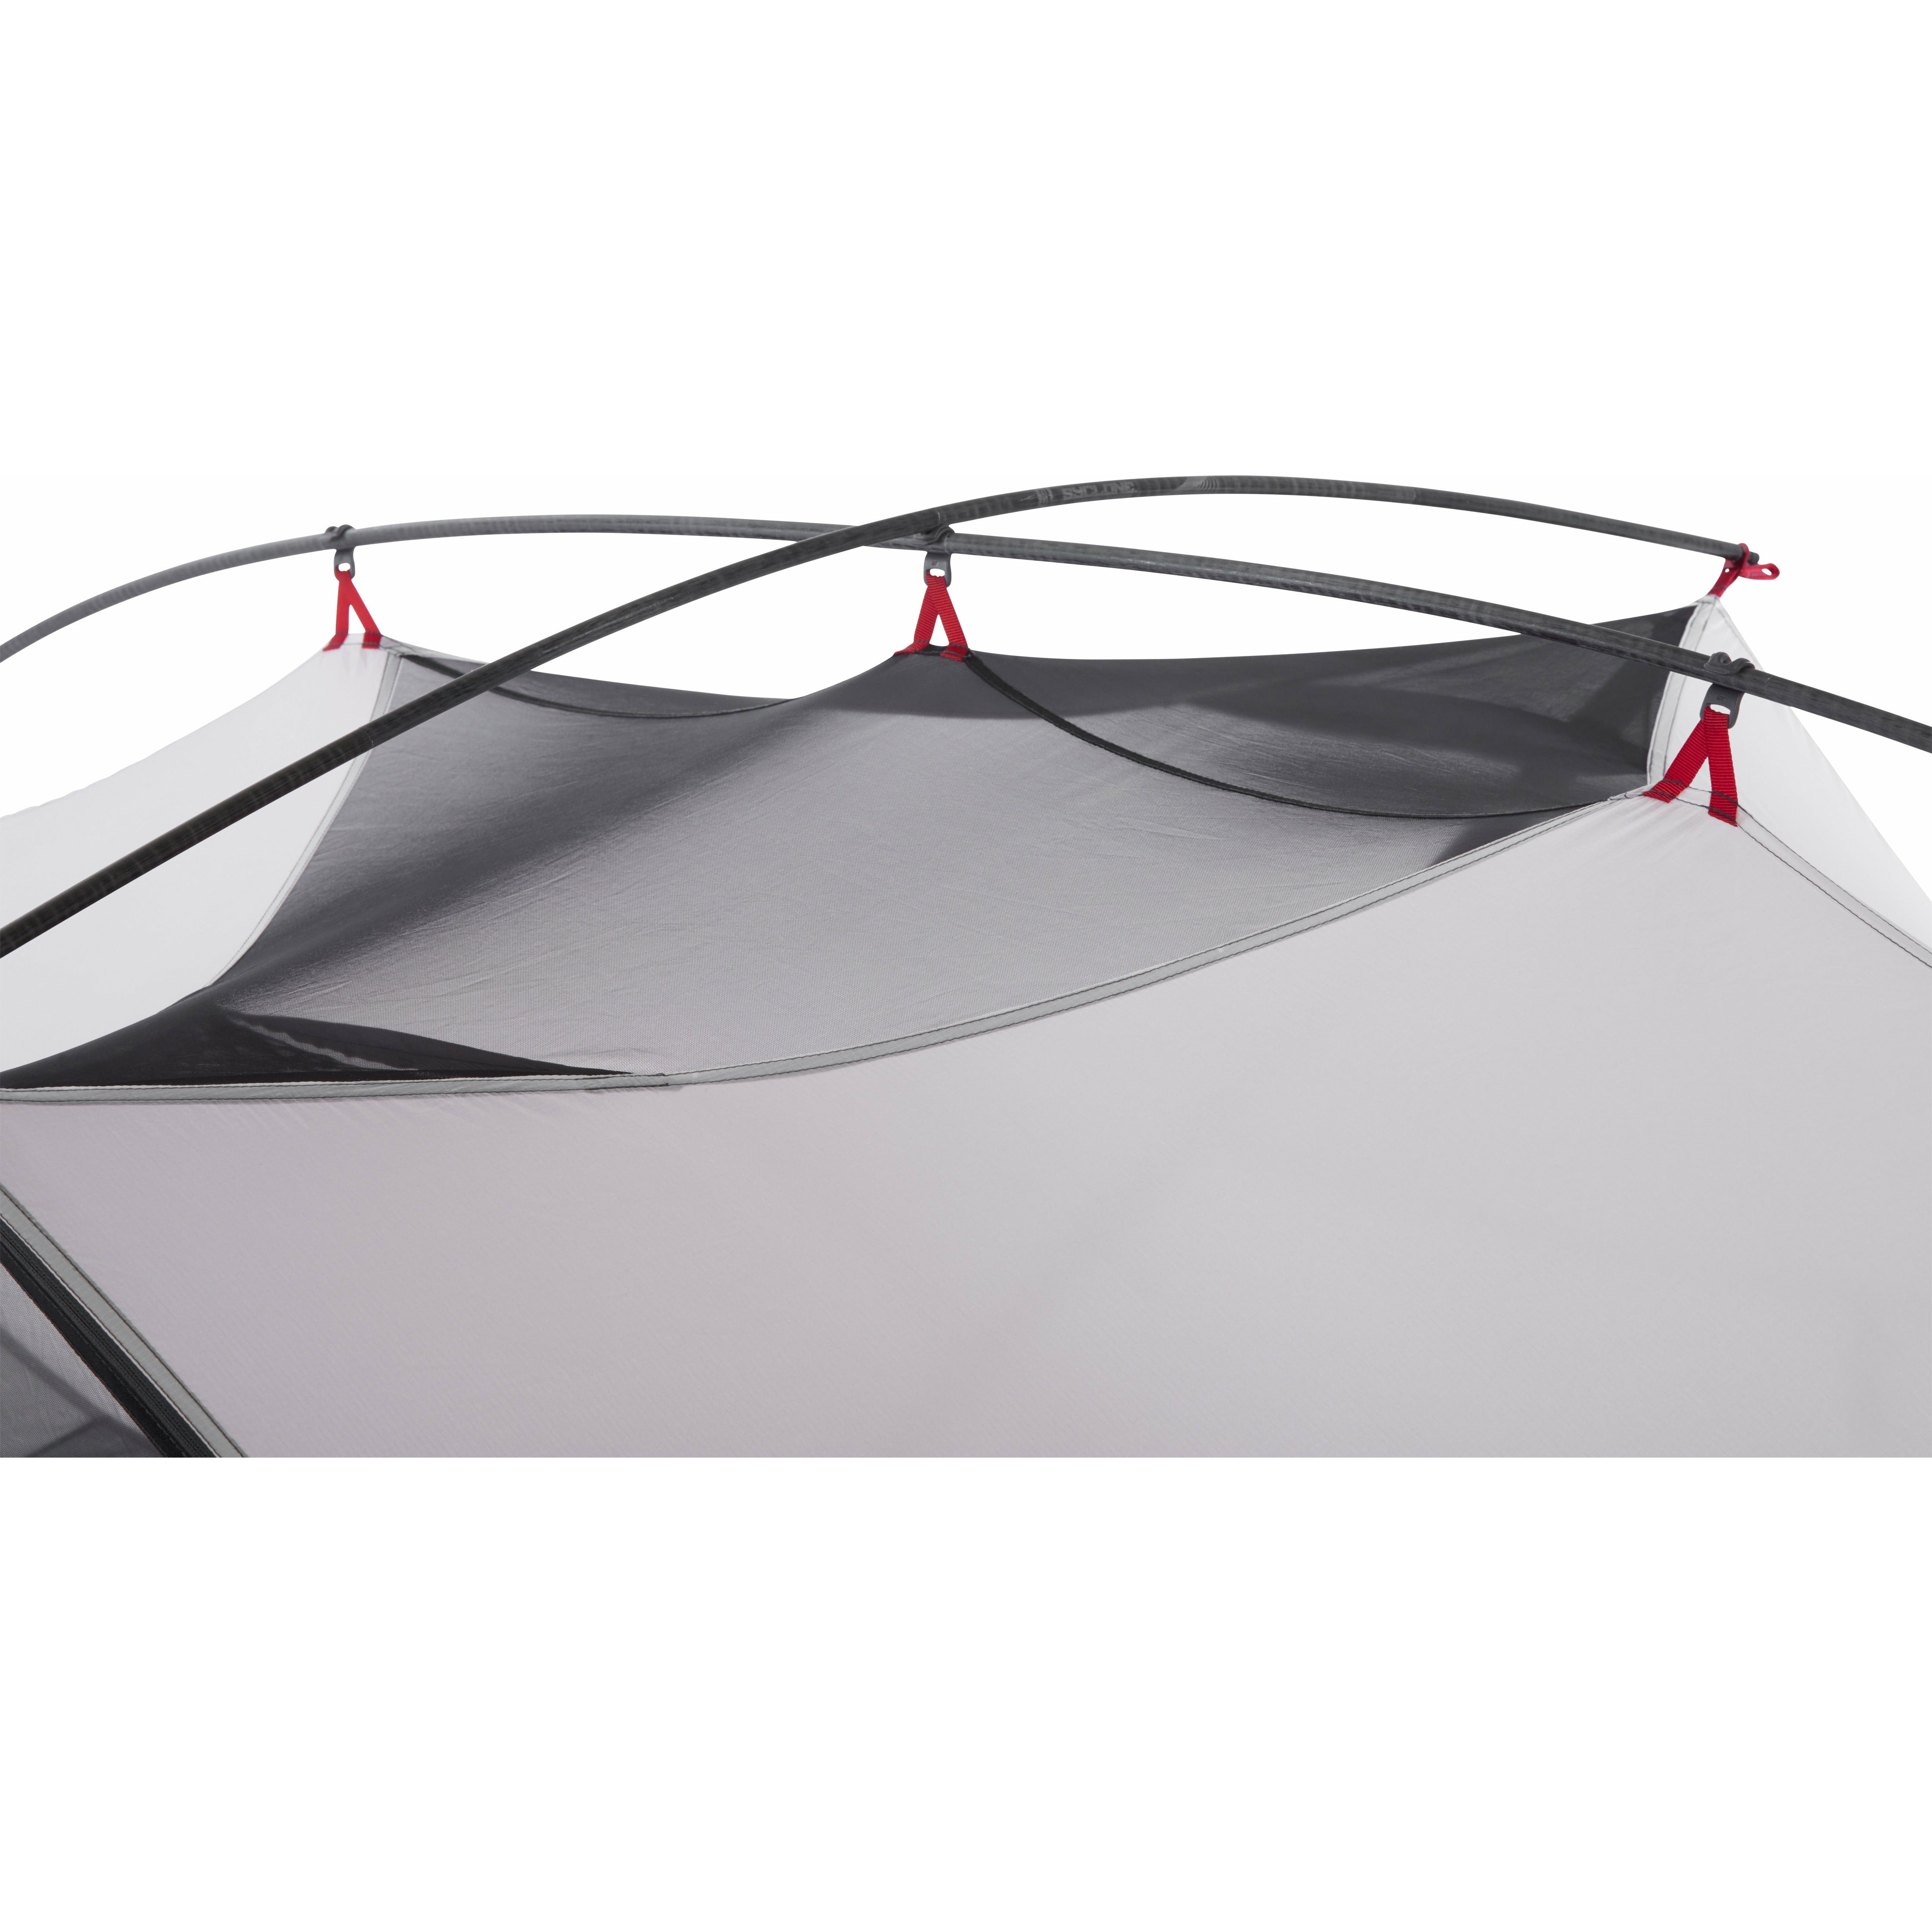 Hubba Hubba 3 - אוהל תרמילאים אולטראלייט לשלושה אנשים דגם 2022